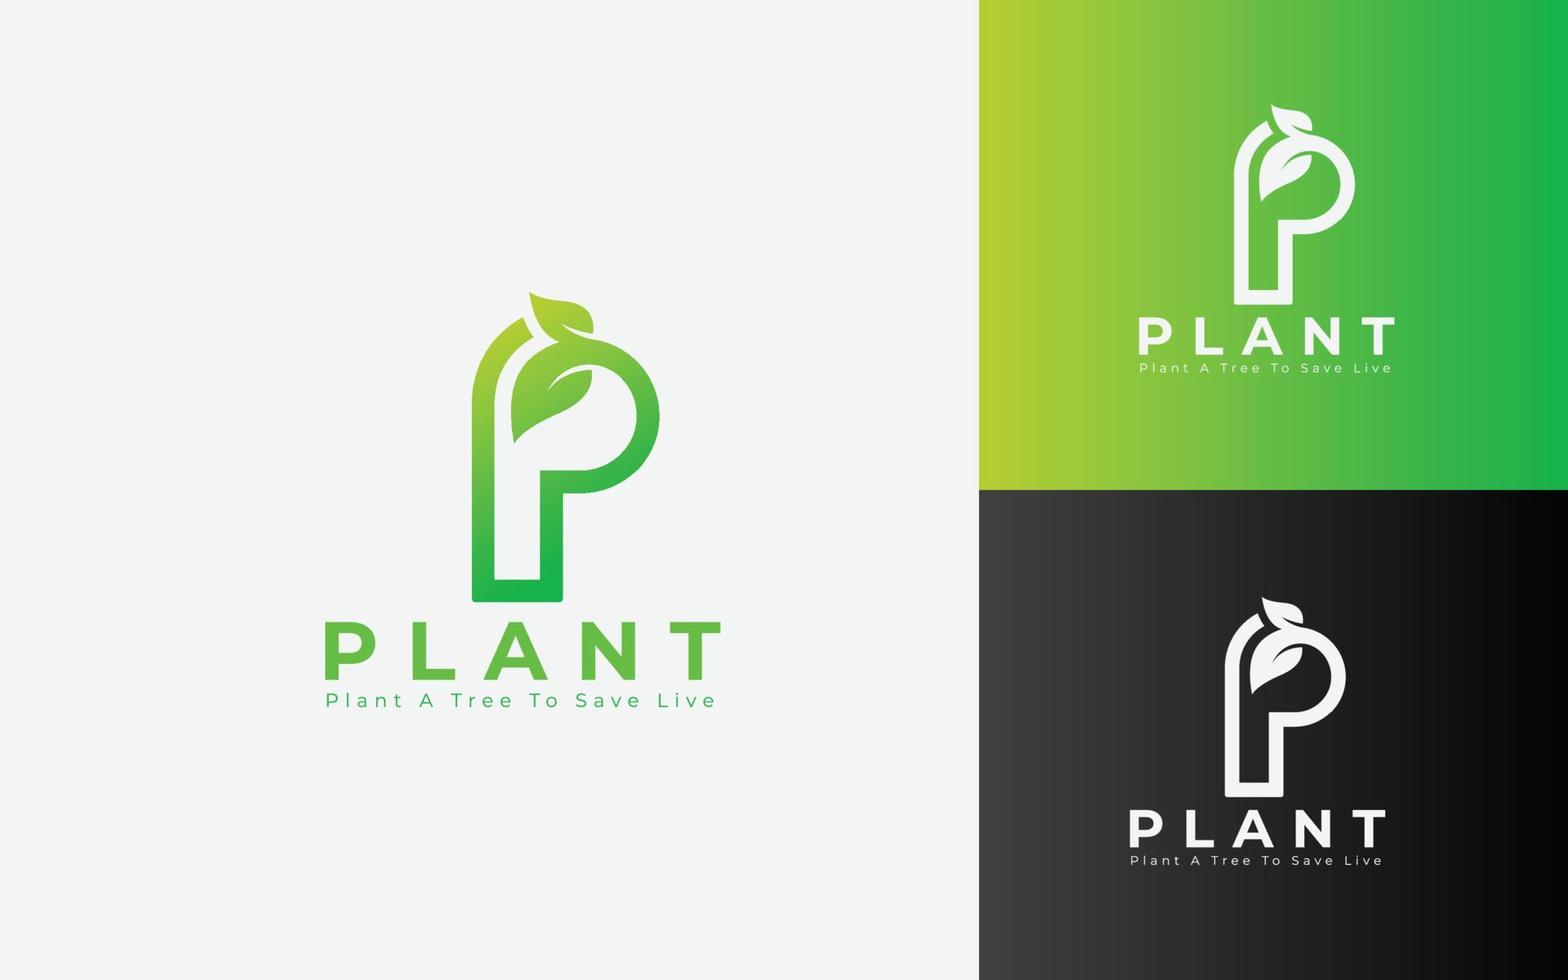 création de logo de plantation d'arbres, plante bio, logo de biologie, vecteur d'élément de nature écologique, logo de feuille d'arbre, logo de lettre p.